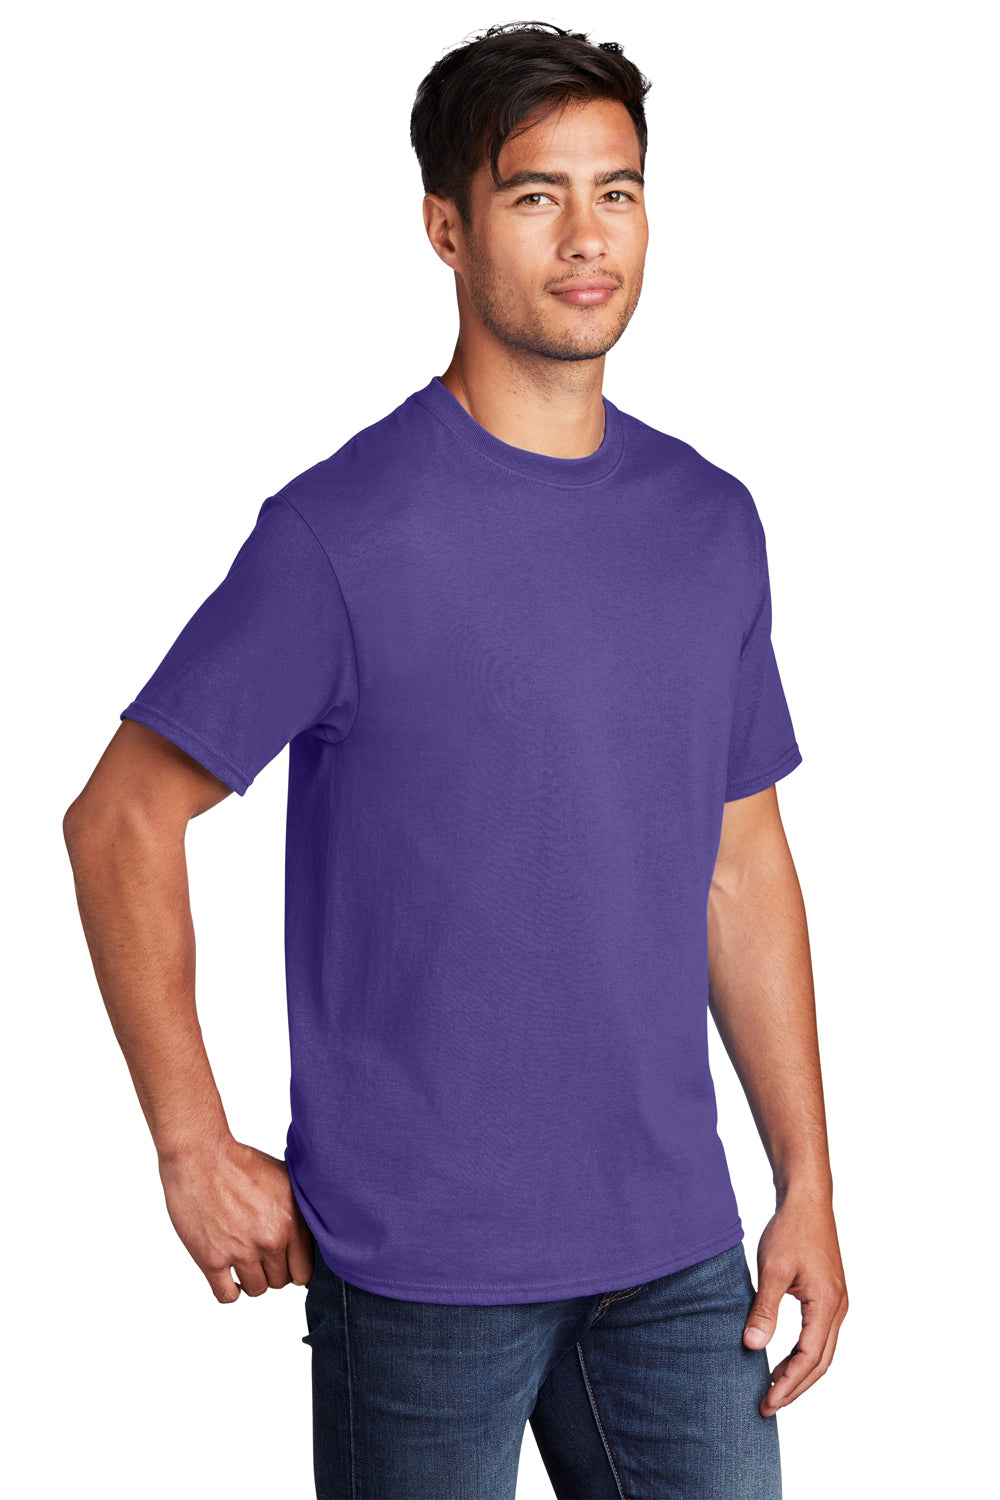 Port & Company PC54DTG Core Cotton DTG Short Sleeve Crewneck T-Shirt Purple 3Q